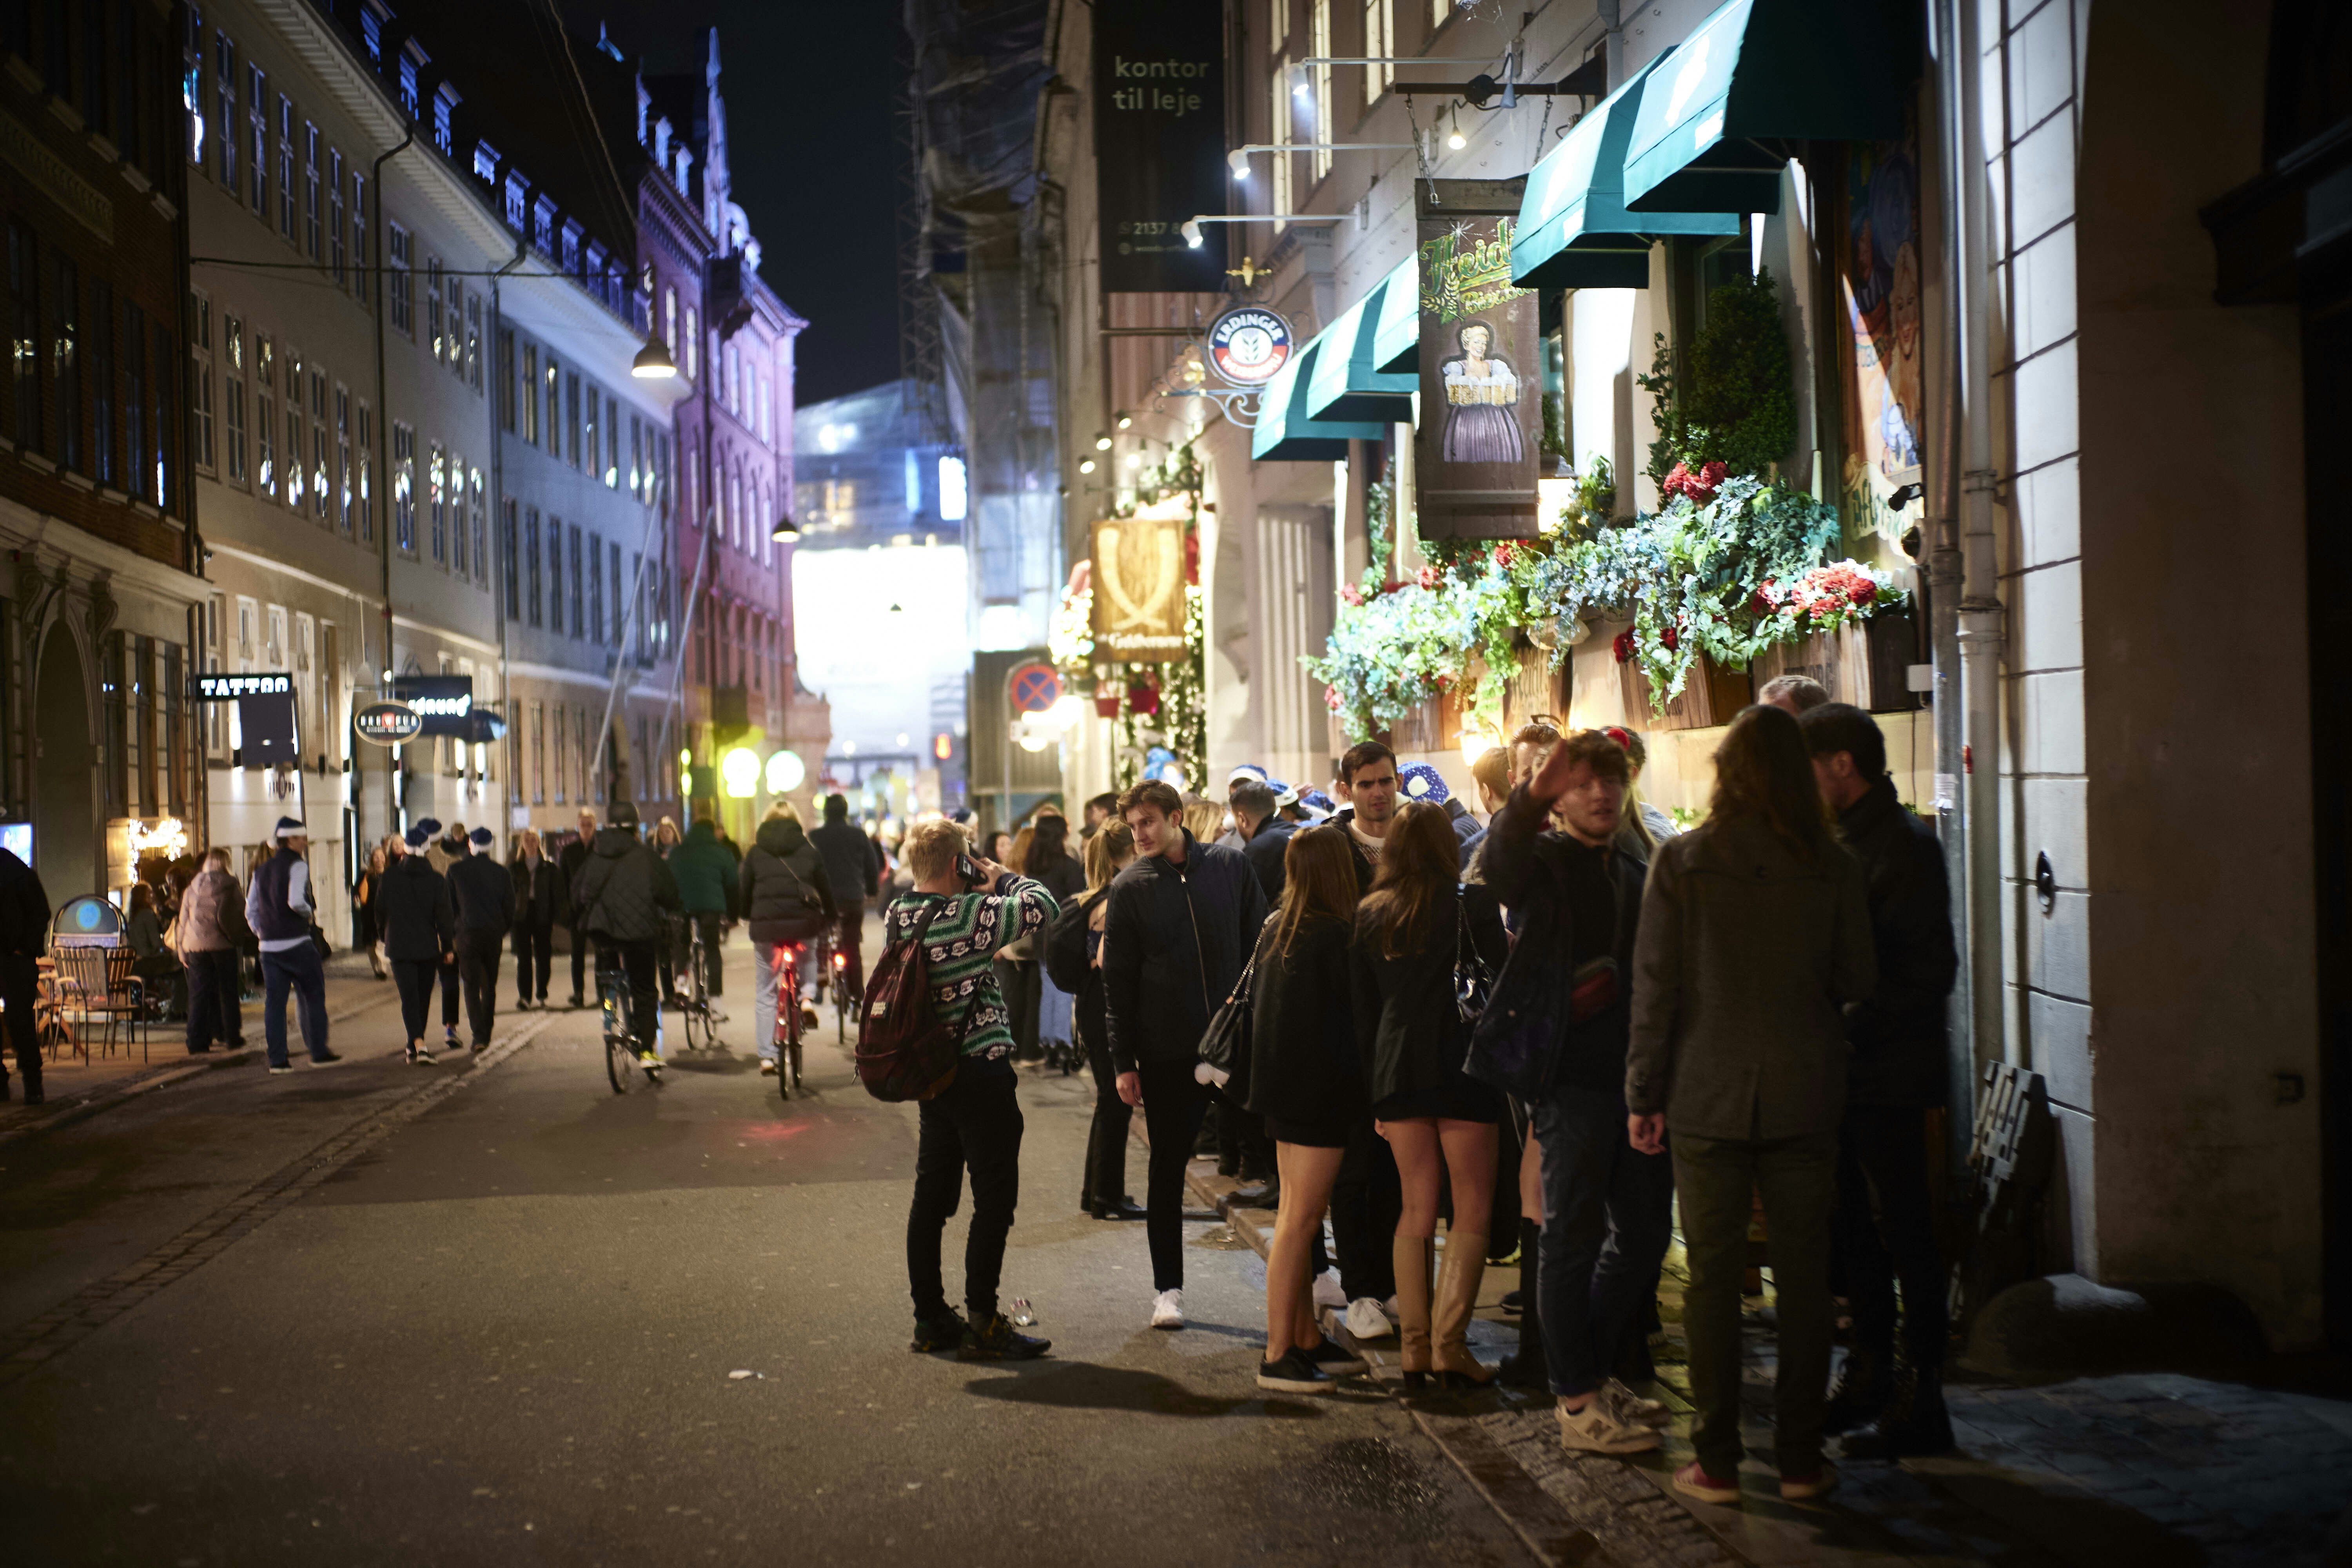 J-dag. Festglade unge mennesker i københavns gader